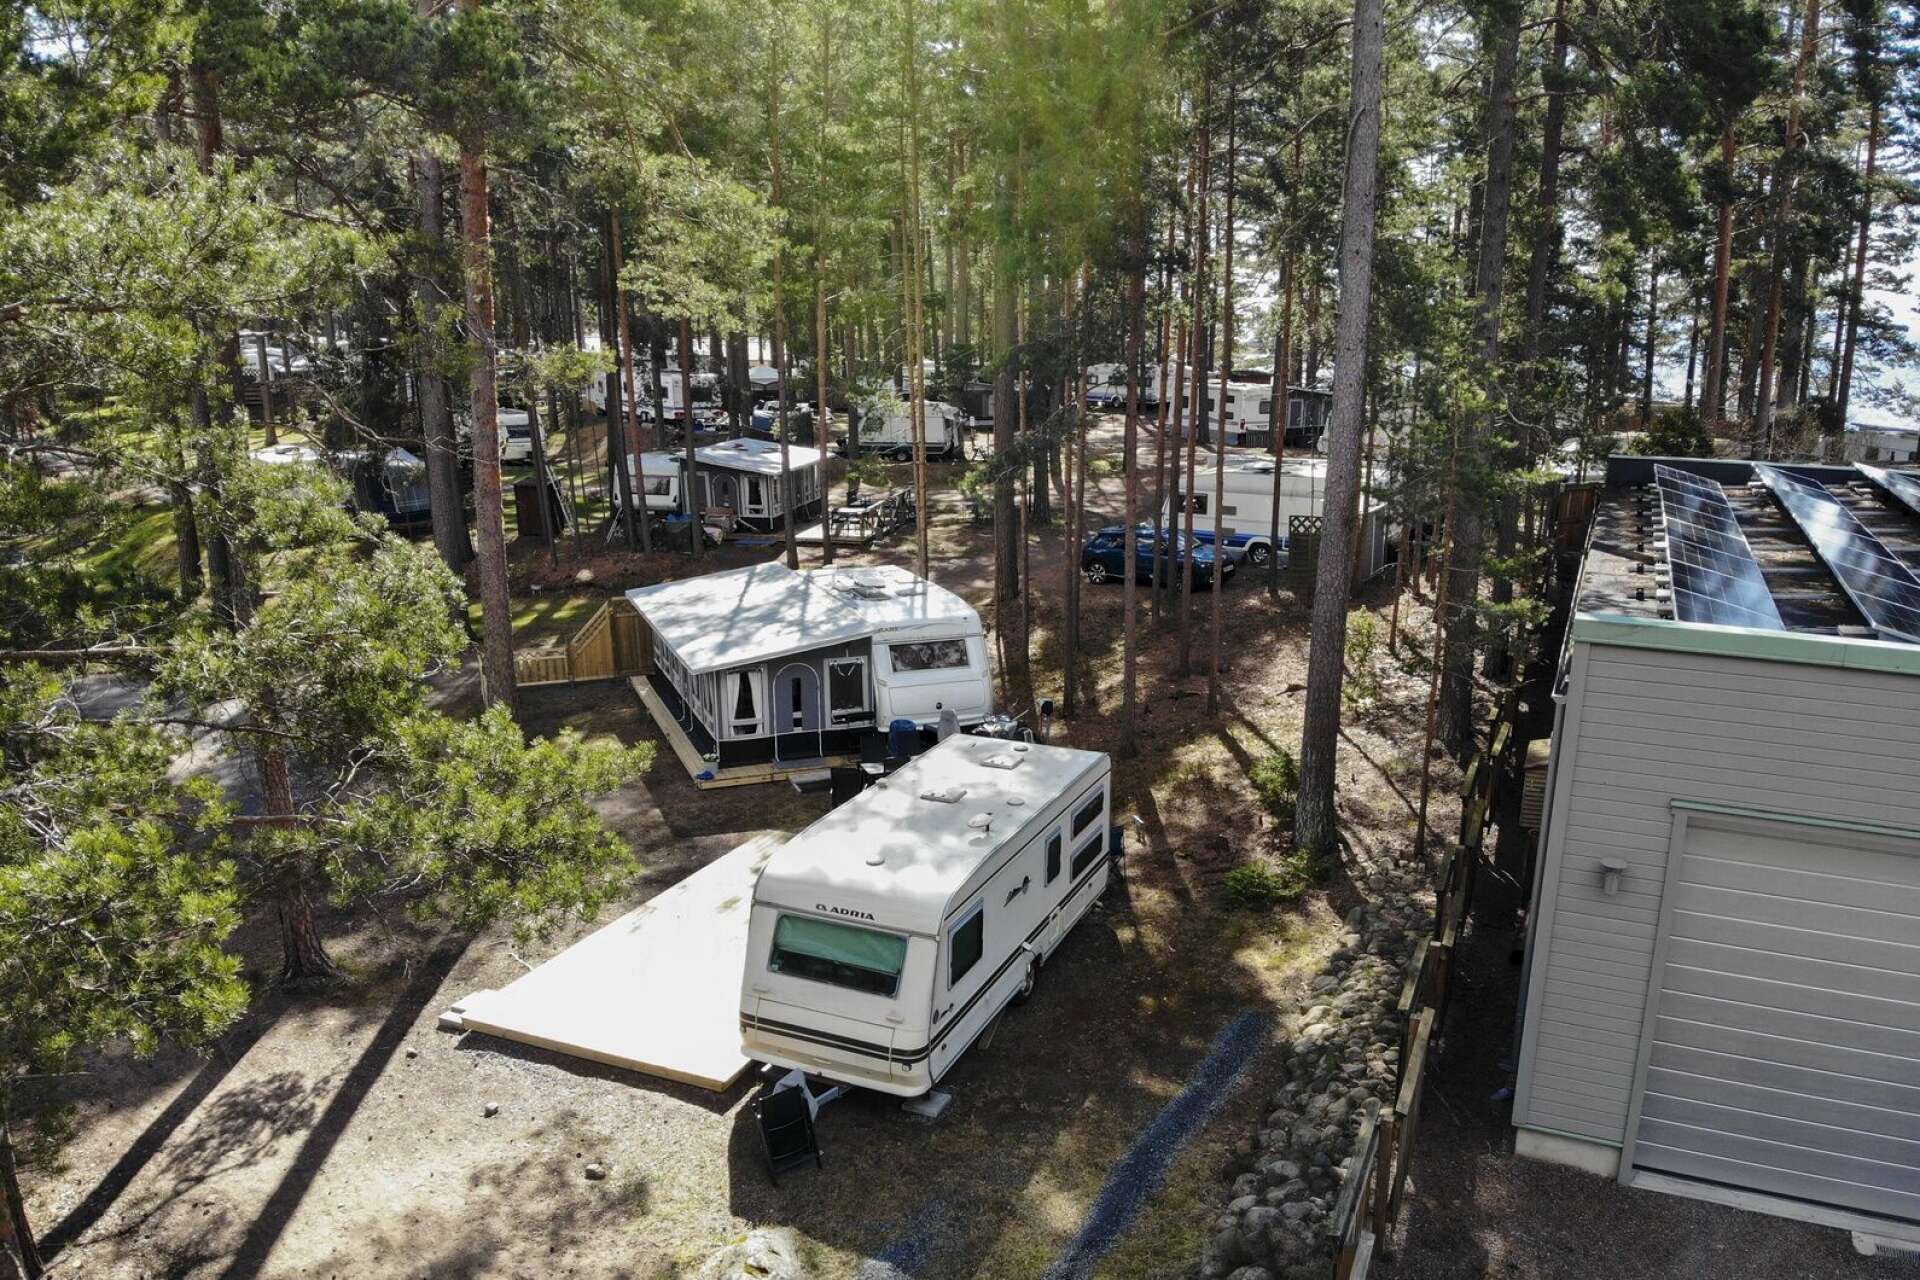 Karlstads kommun har tagit fram en ny detaljplan för Bomstadbadens camping där inte den södra udden längre ingår. Nu ska den ut på granskning.